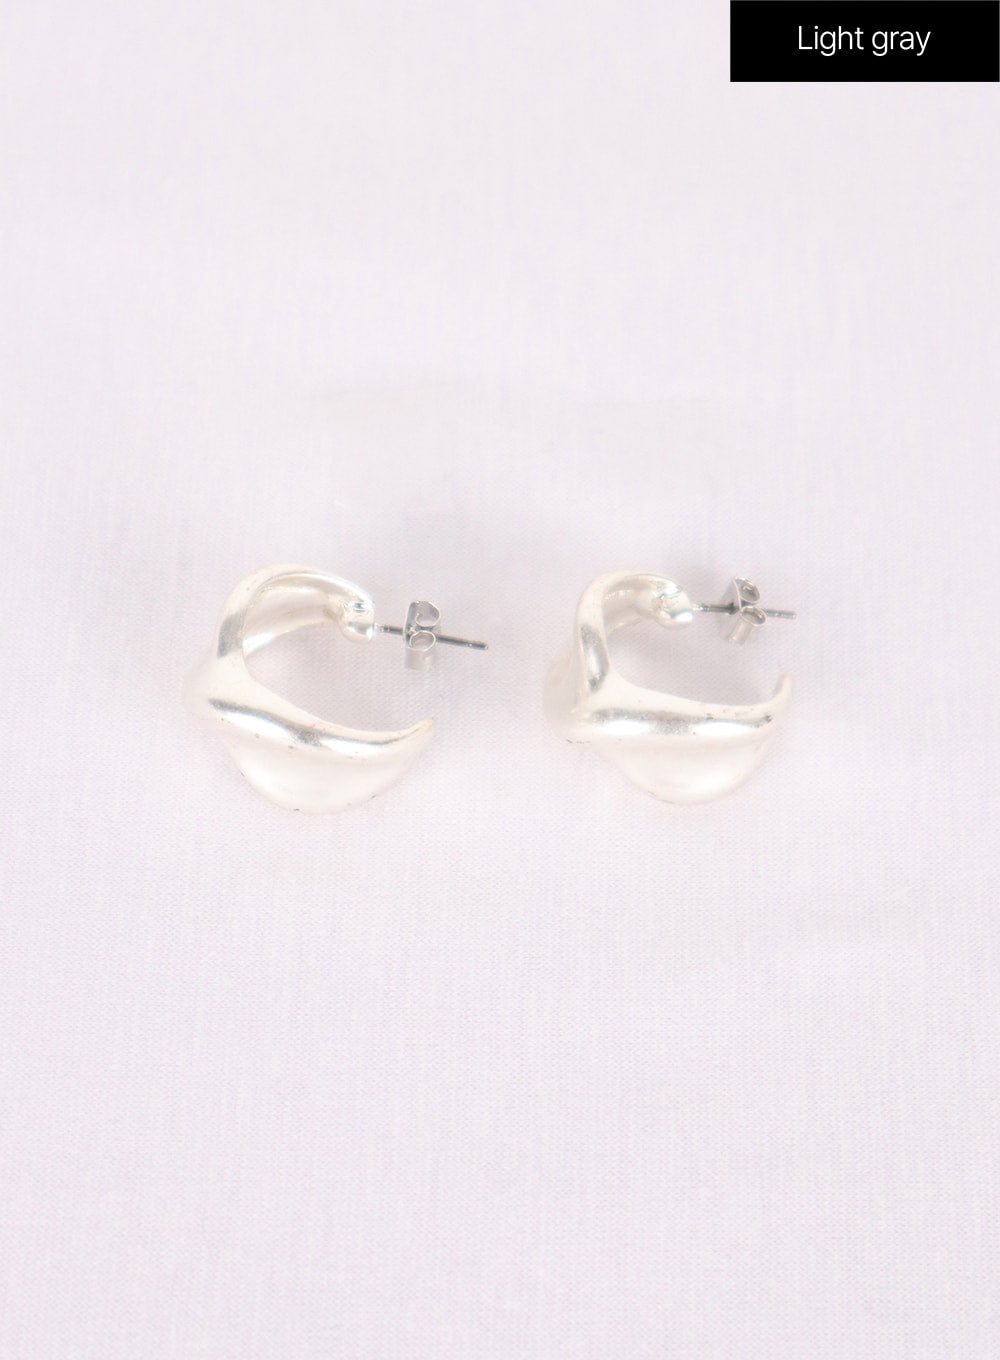 bold-hoop-earrings-in302 / Light gray